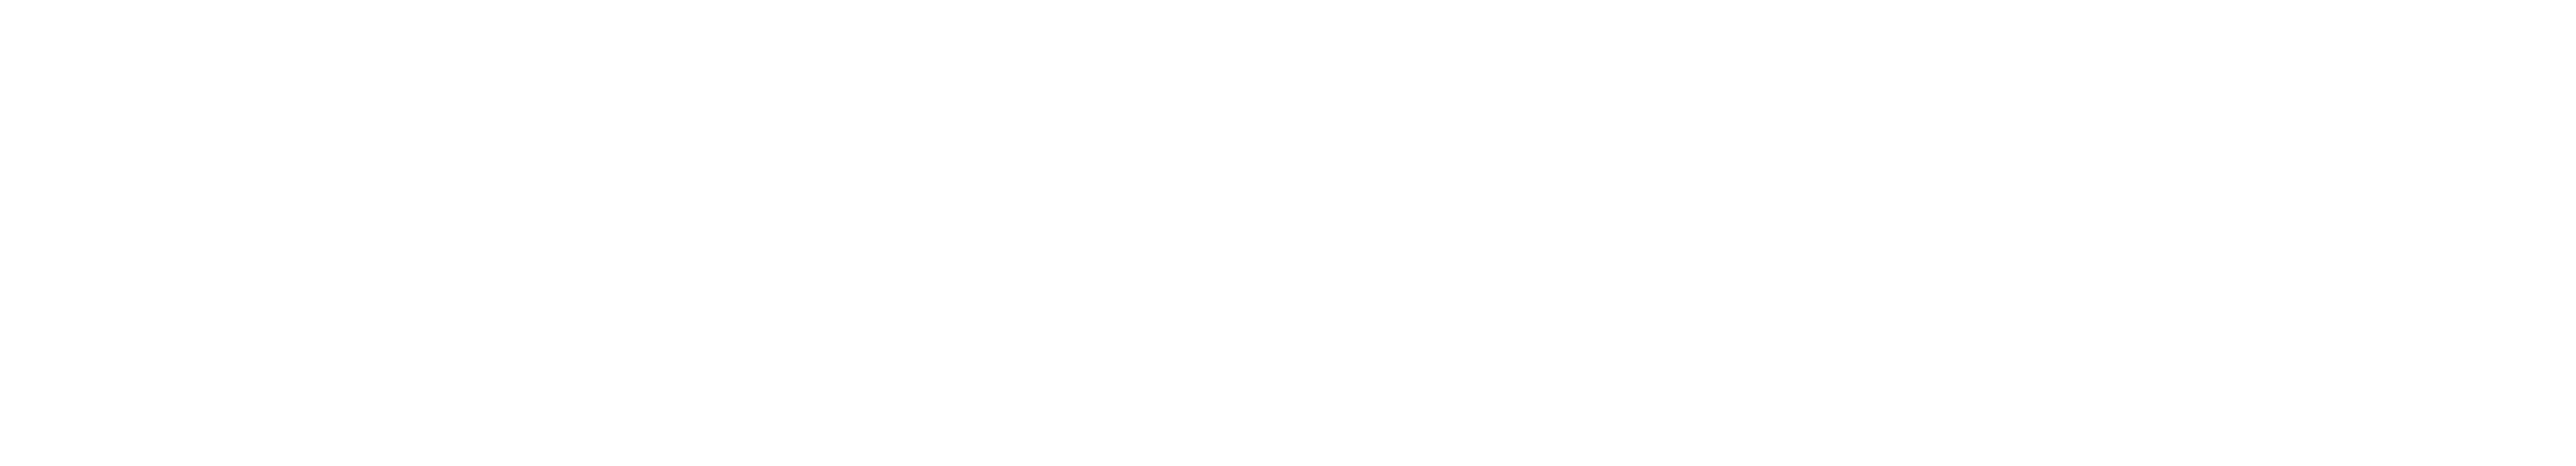 Trello-logo-gradient-white-attribution_rgb@2x-06